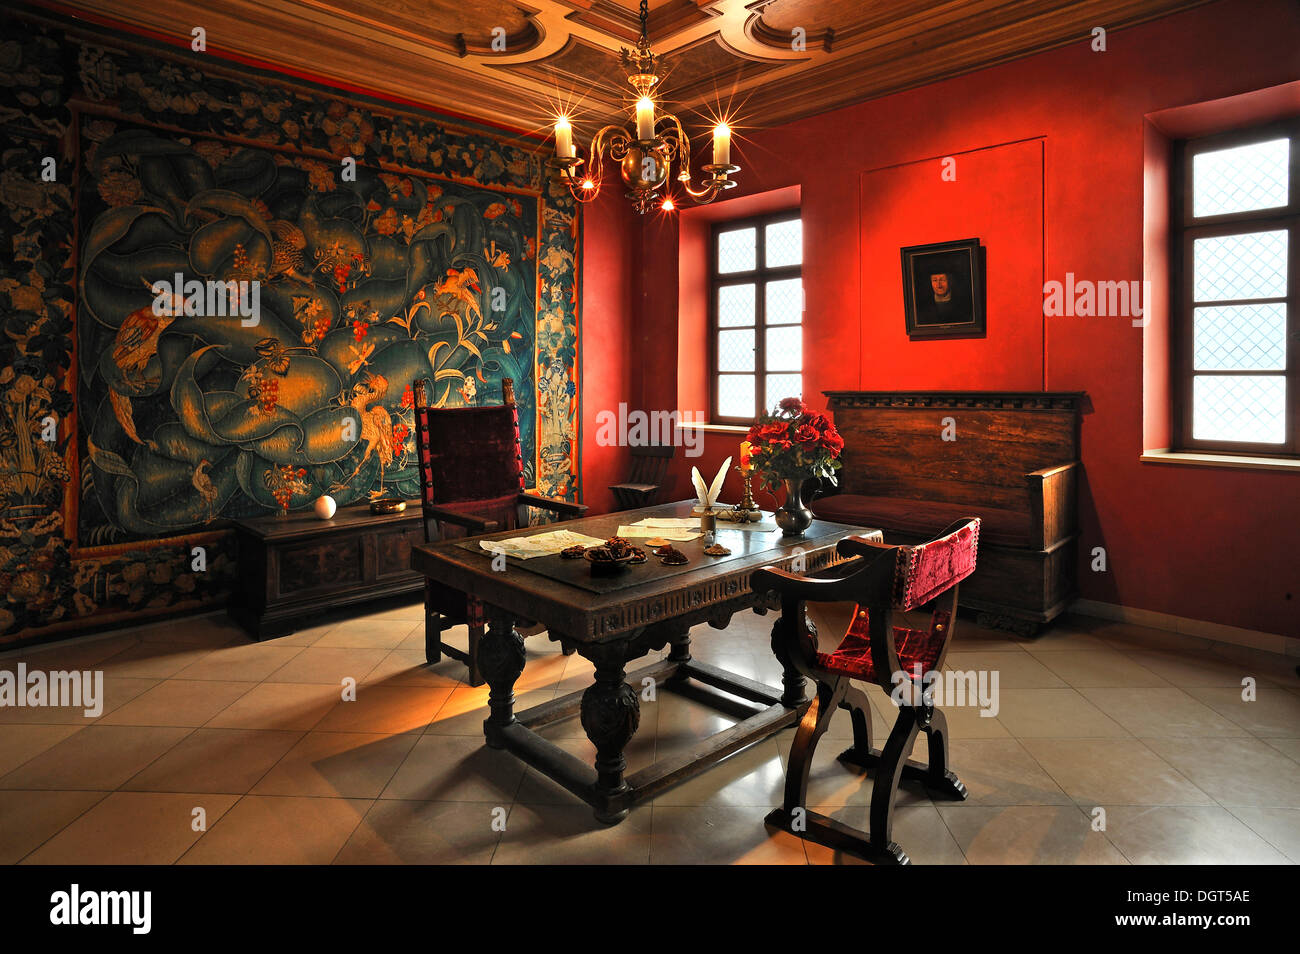 Salle de réception, fin du 16e siècle, le néerlandais avec les épices, la table de produits de l'époque, à gauche, à partir de 1570 à partir de la tapisserie néerlandais Banque D'Images